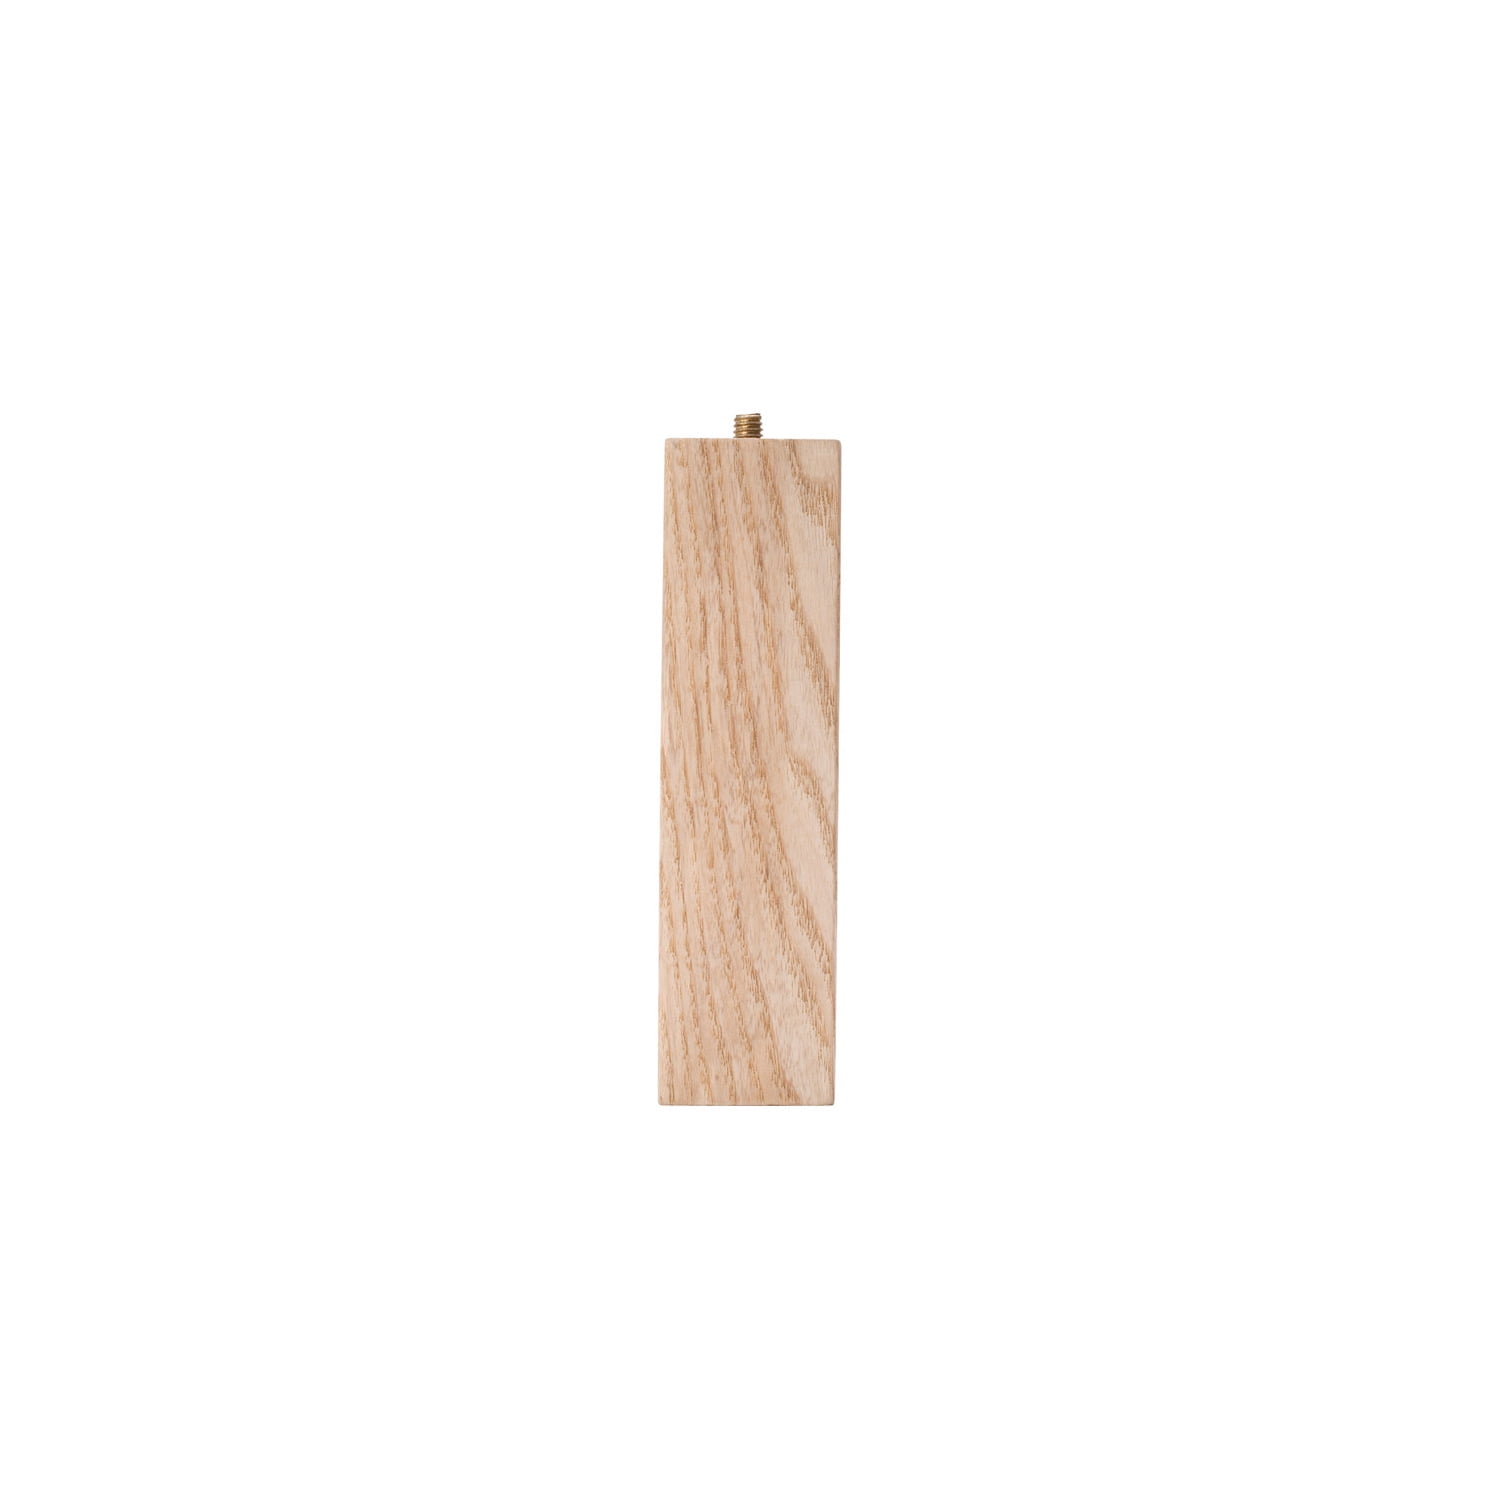 Ash wood table legs 